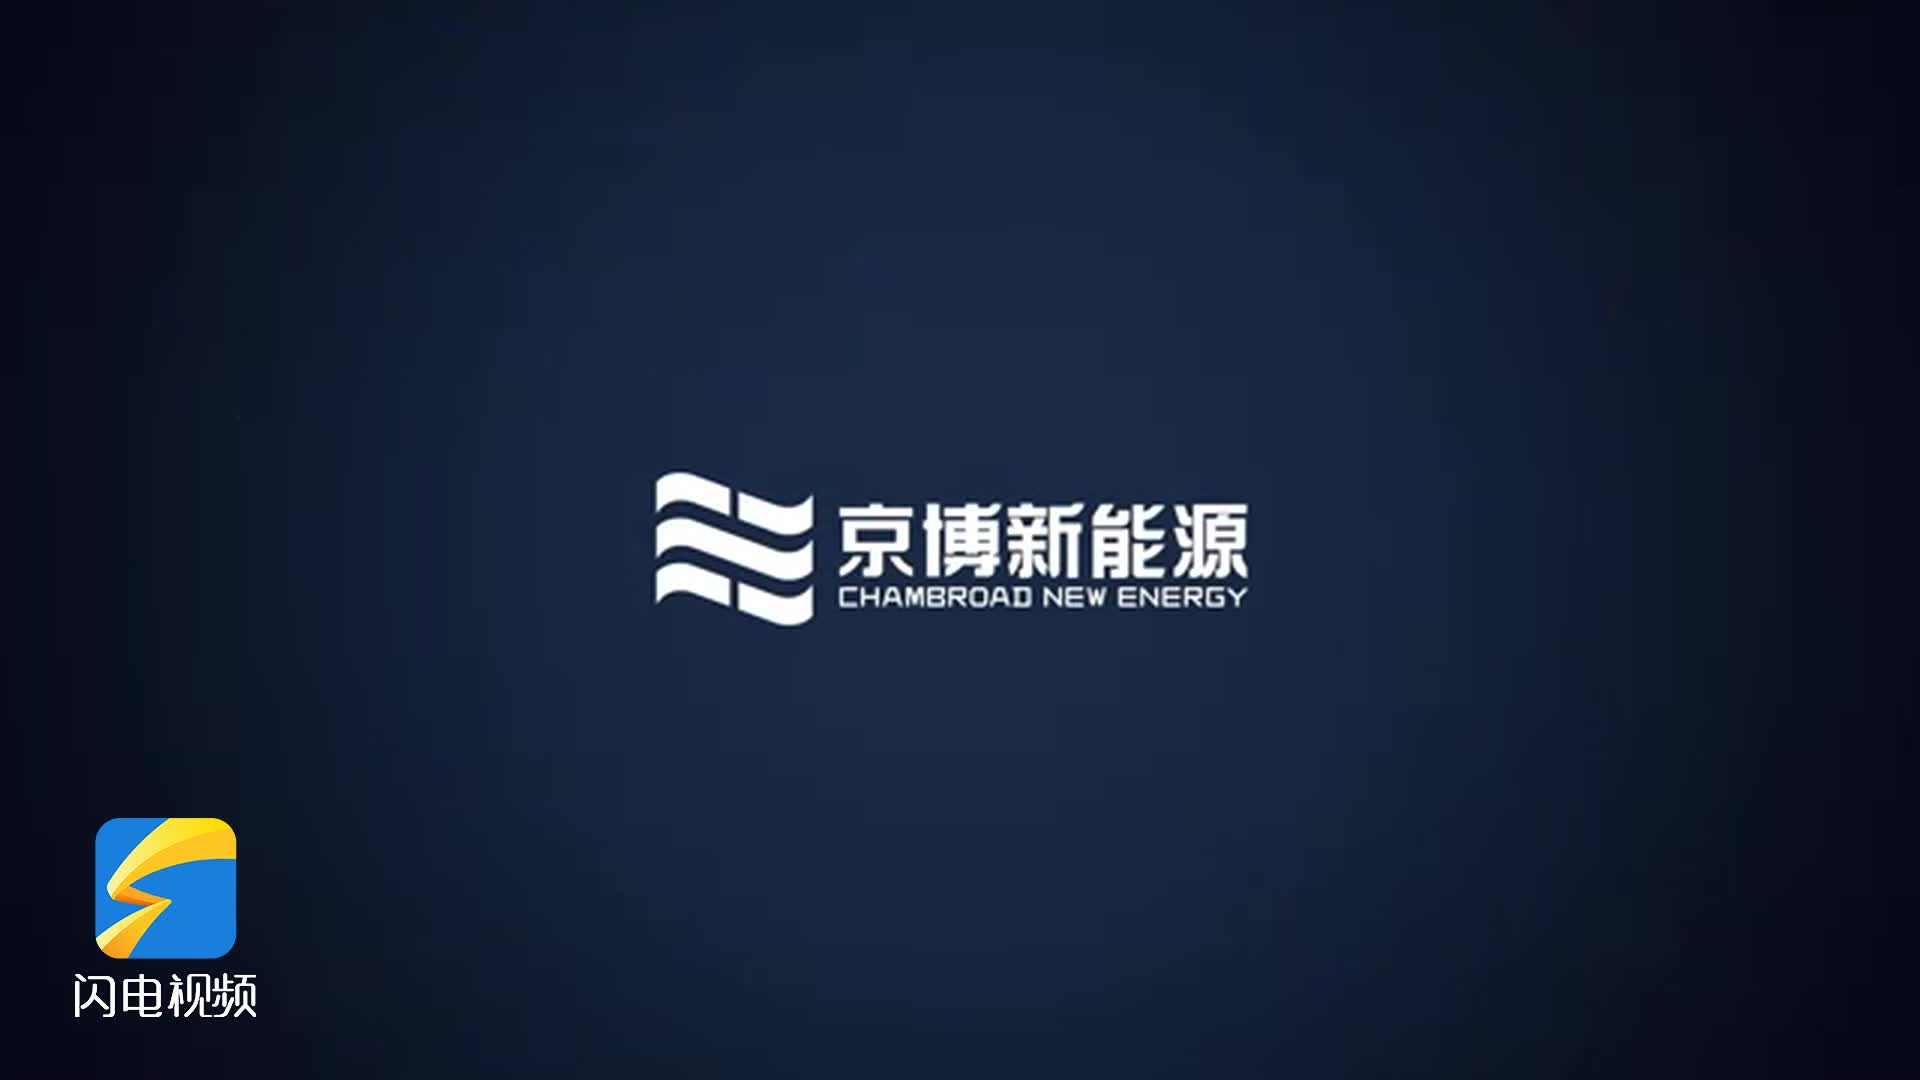 京博新能源燃擎92号汽油品牌发布会将于8月26日举行